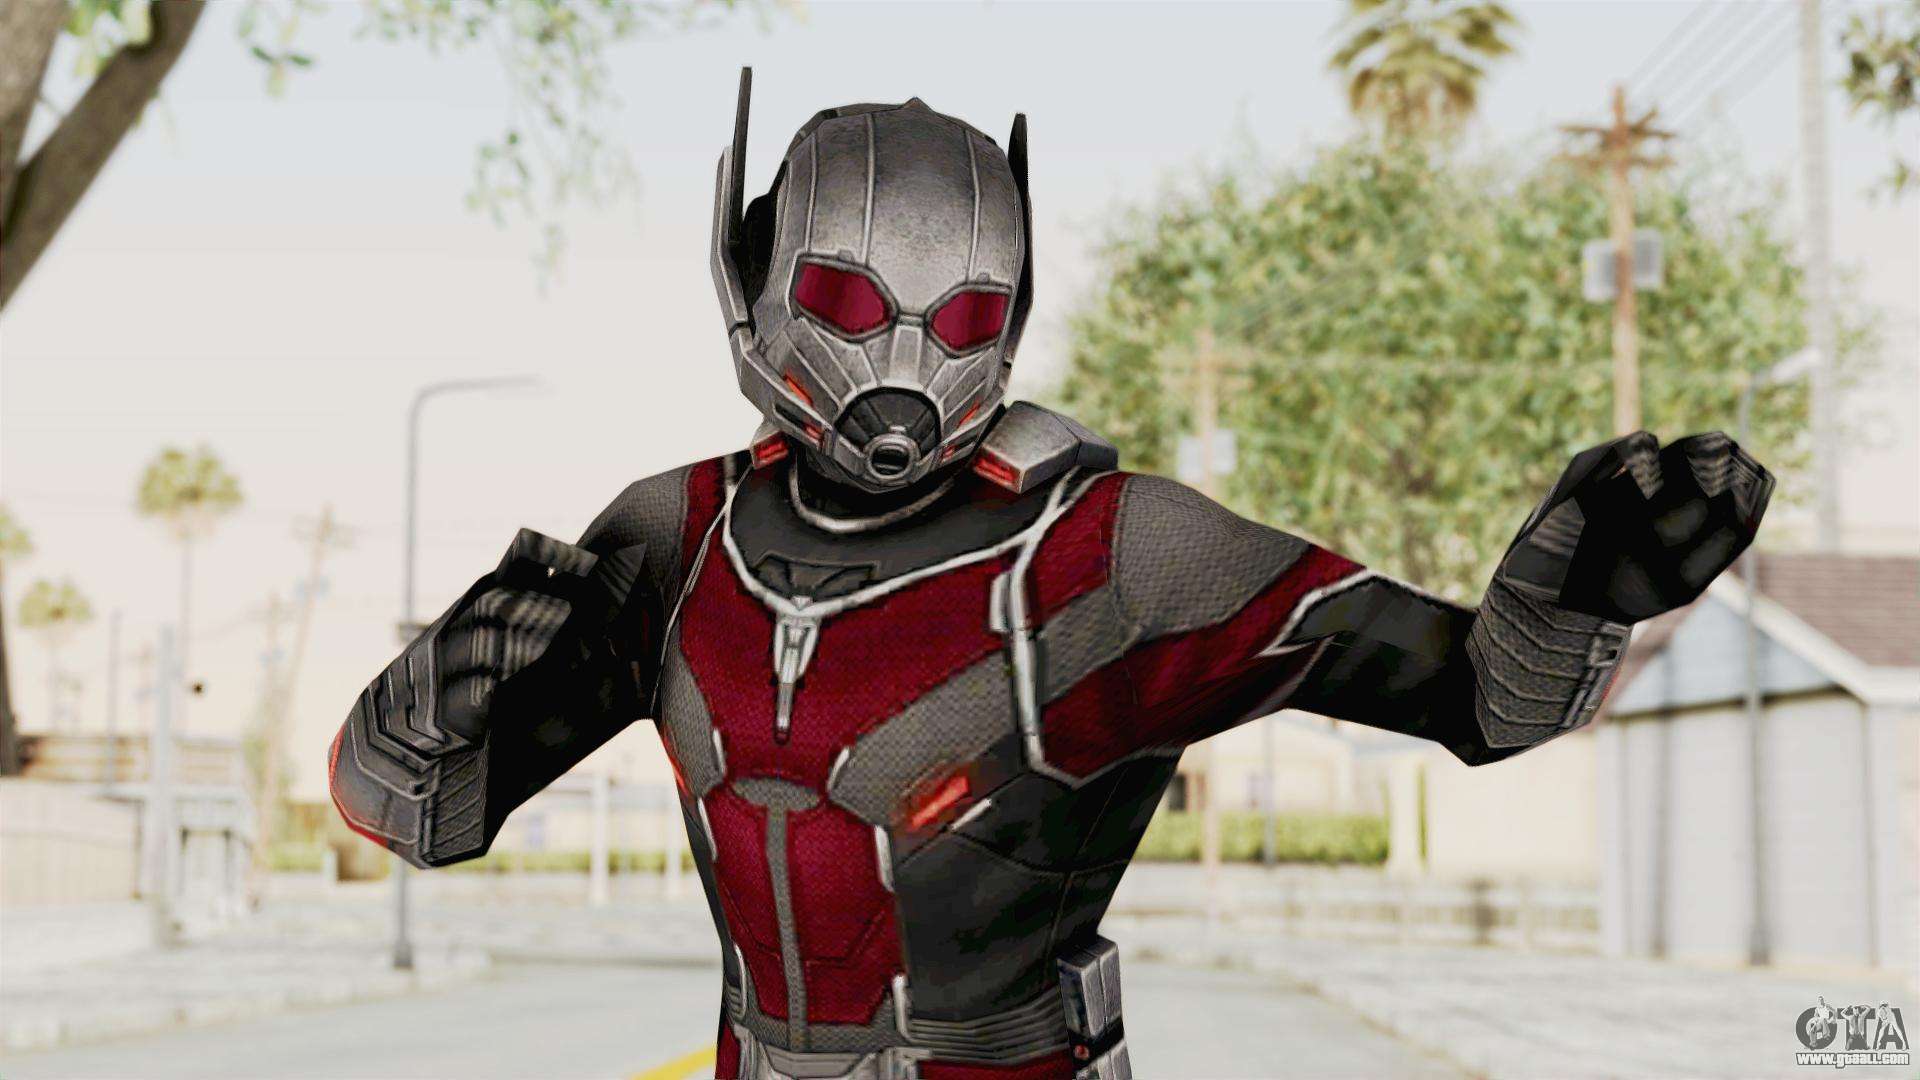 Captain America Civil War - Ant-Man for GTA San Andreas